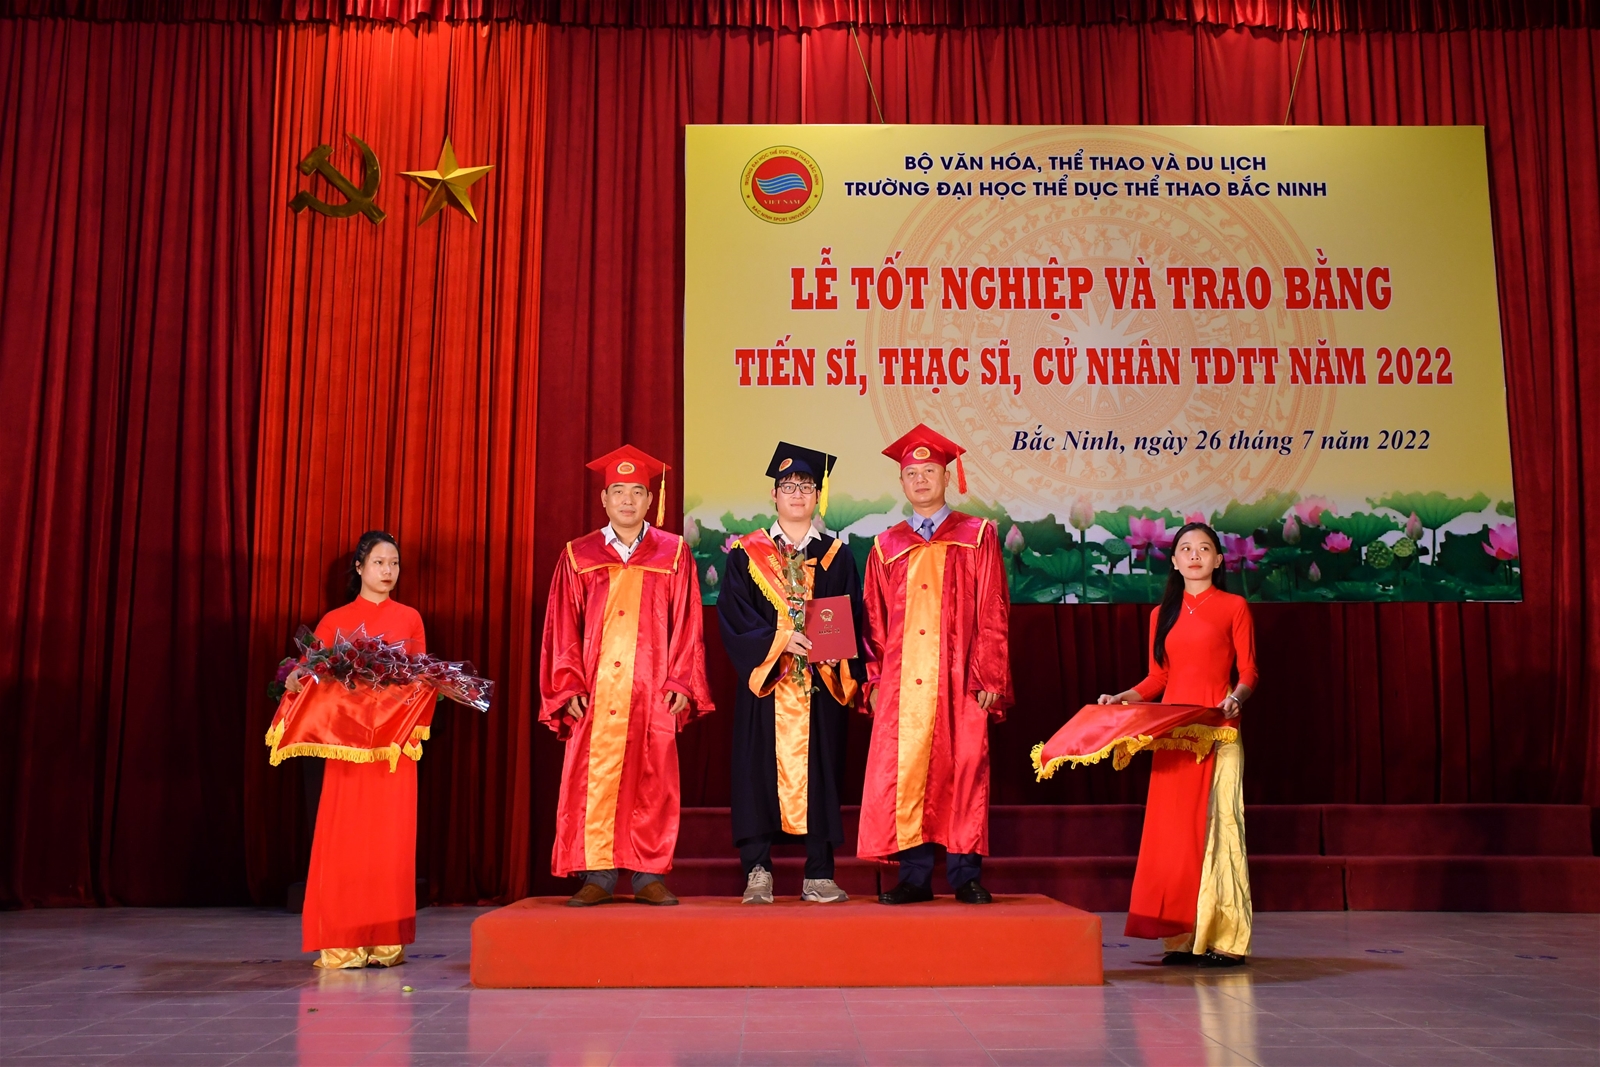 Lễ tốt nghiệp và trao bằng tiến sĩ, thạc sĩ, cử nhân TDTT năm 2022